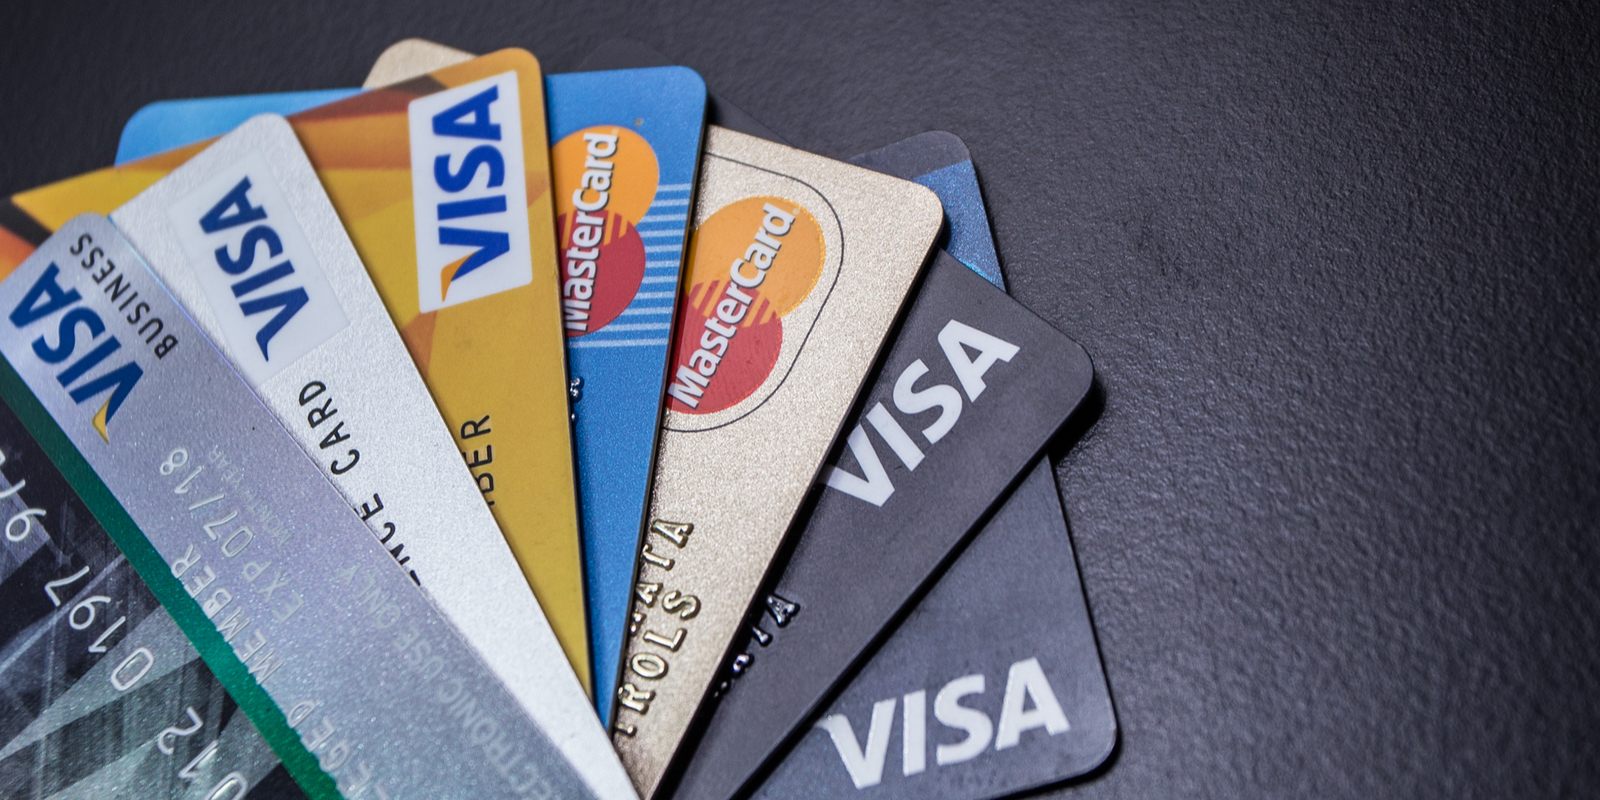 Paypal Exits Libra – Mastercard and Visa May Follow